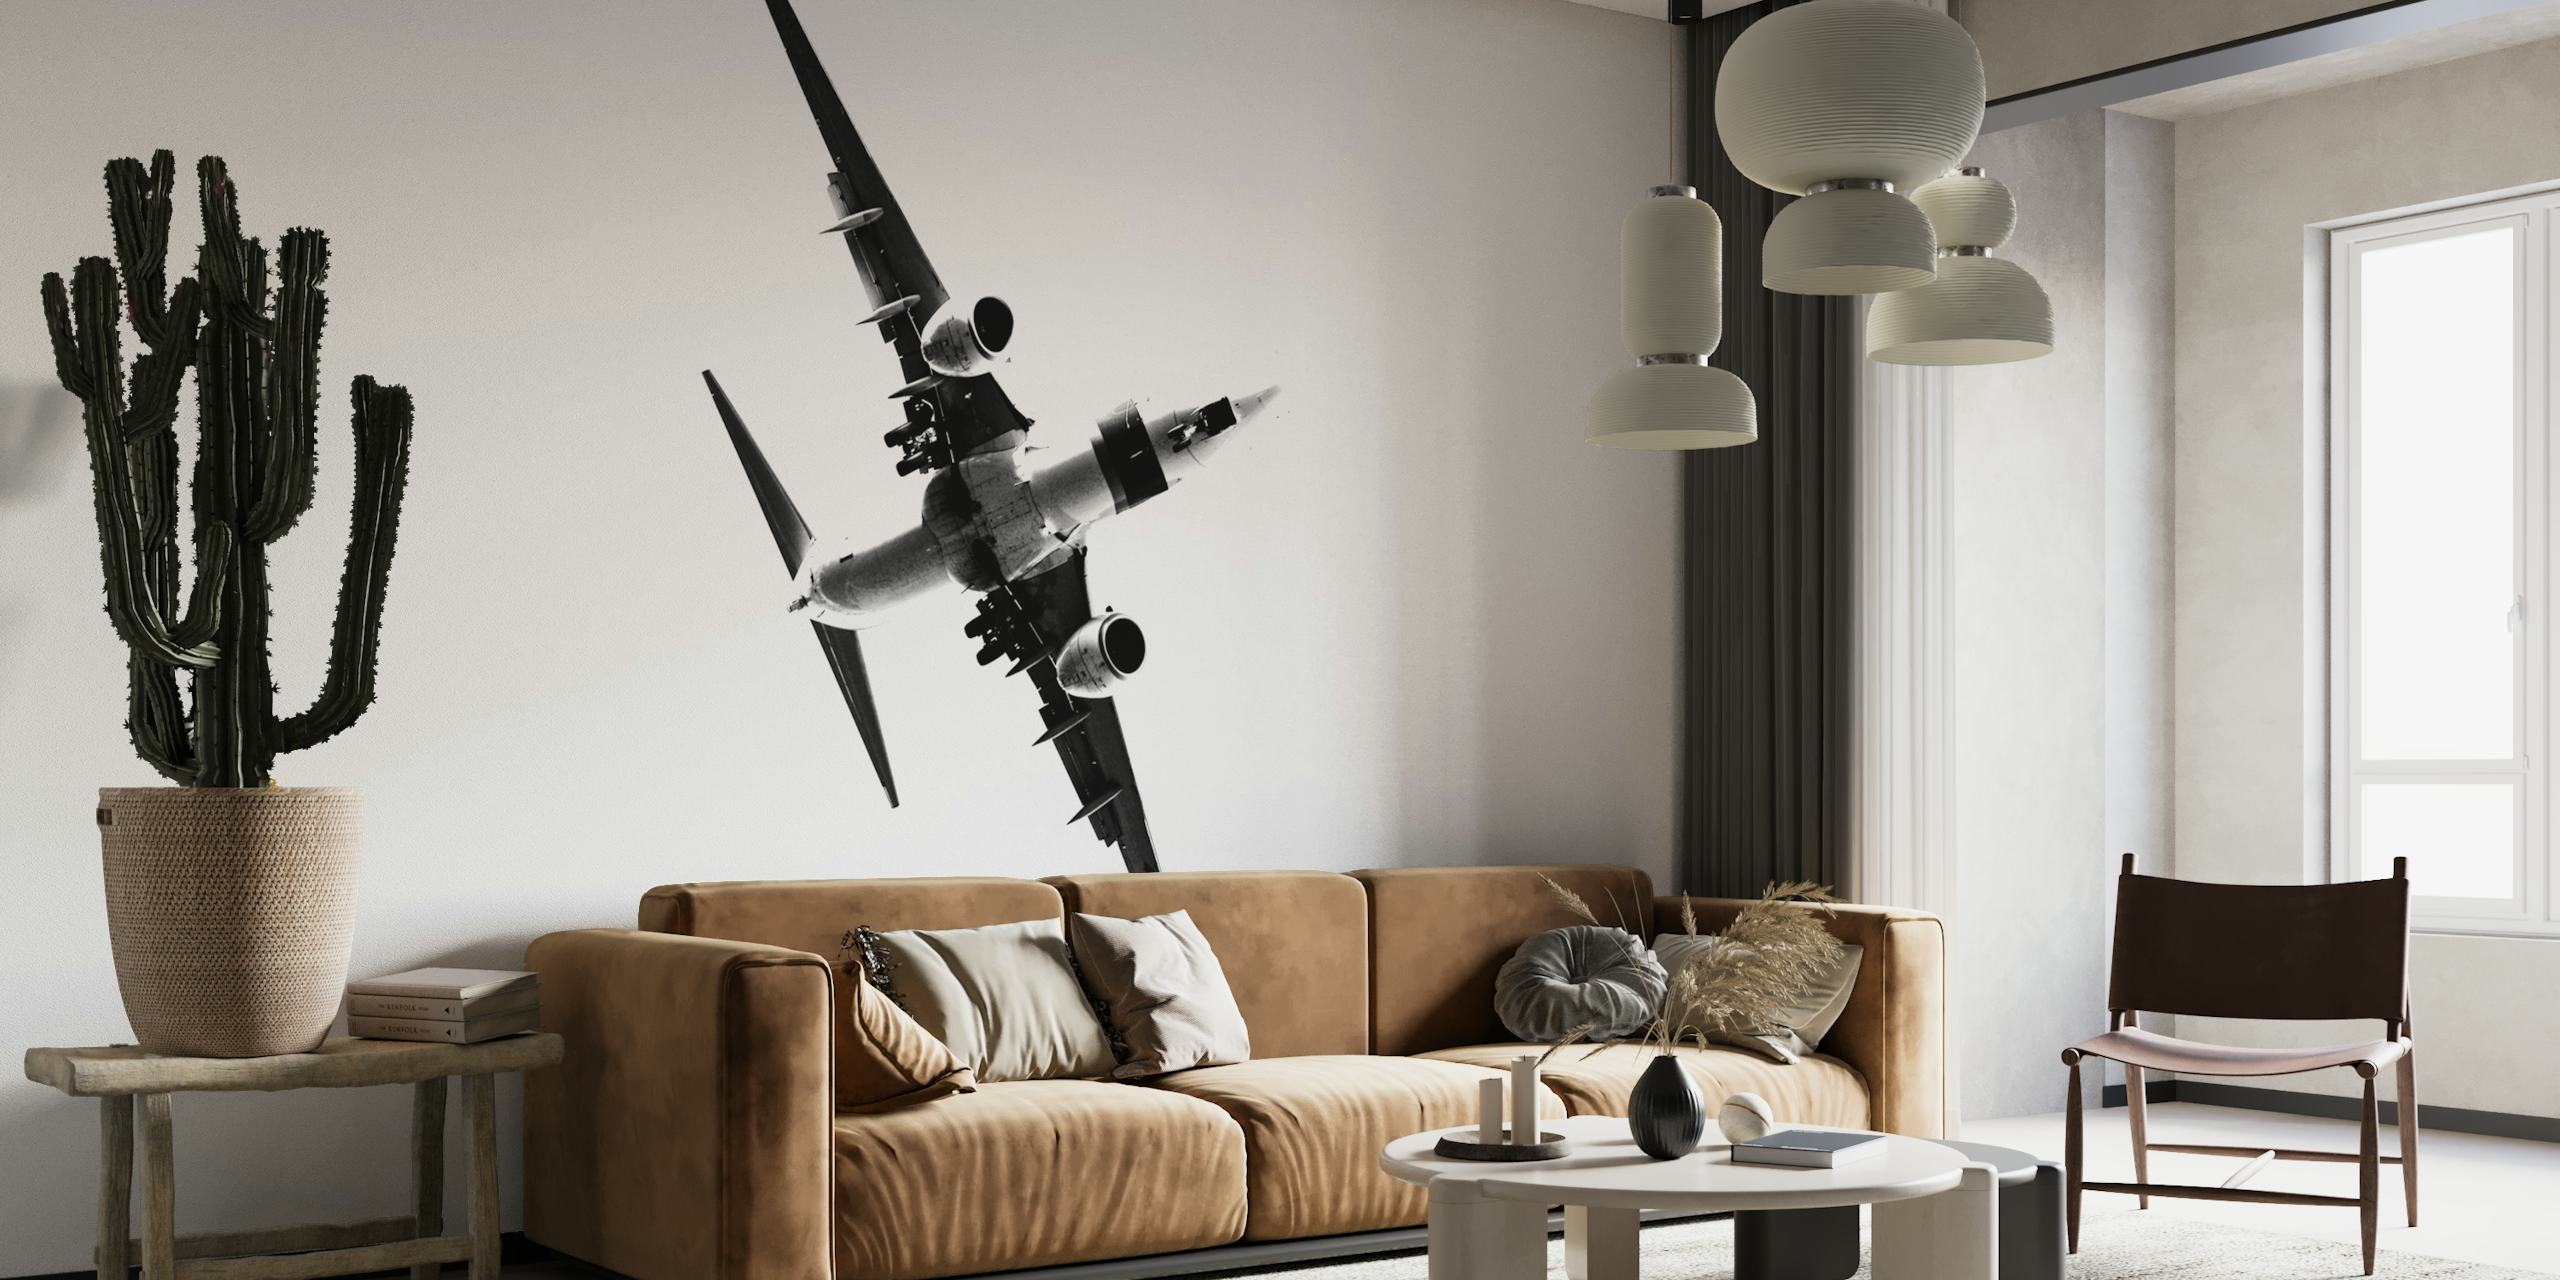 Czarno-biała fototapeta przedstawiająca stylizowany wznoszący się samolot, symbolizujący postęp i ambicje